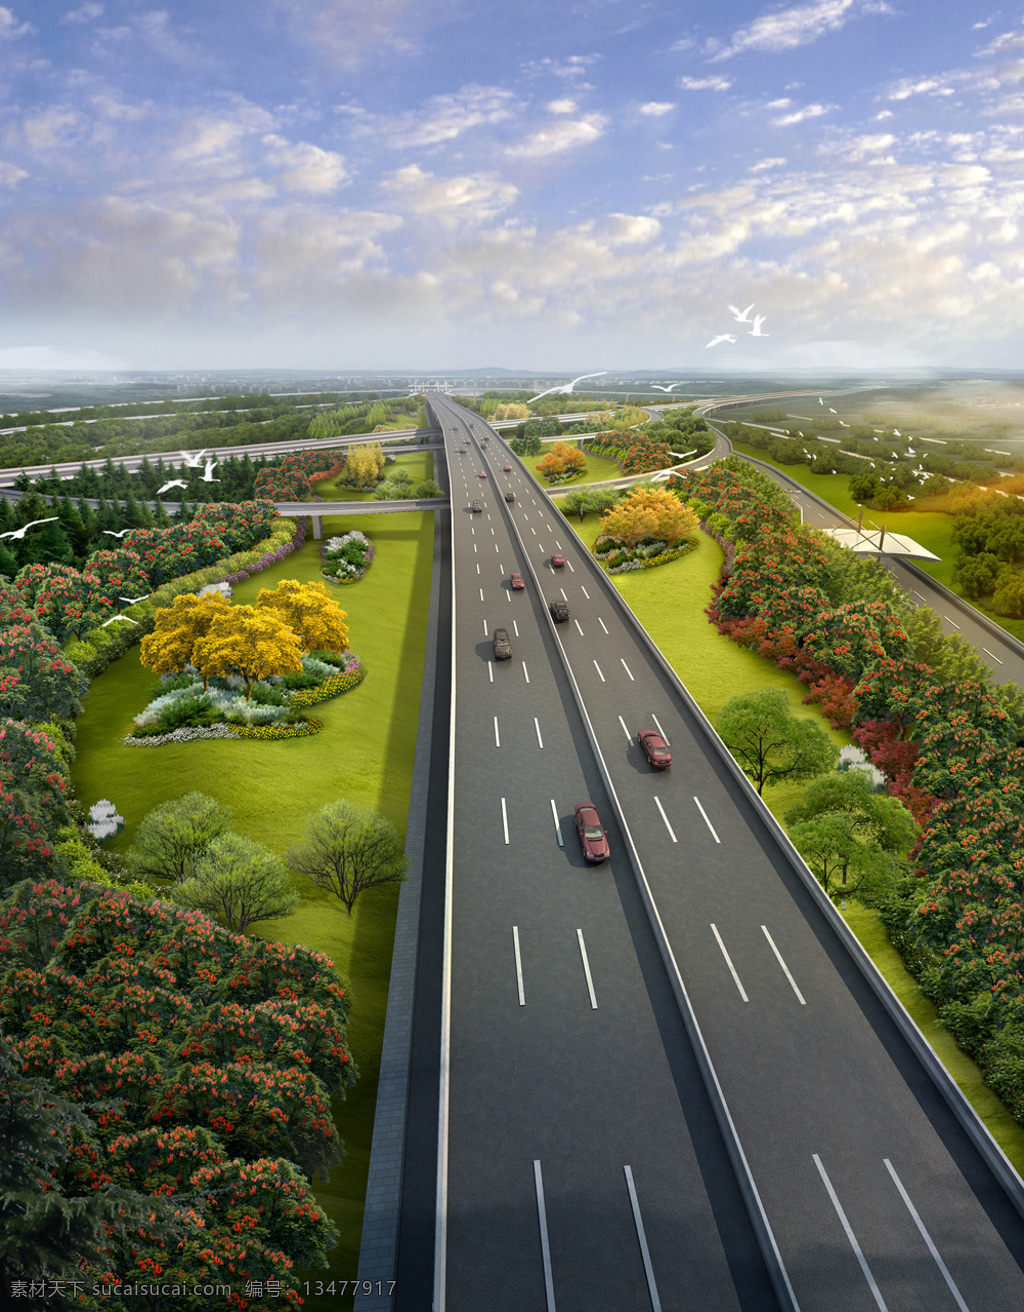 市政 路桥 效果图 道路 绿化 道路绿化 桥梁 景观 环境设计